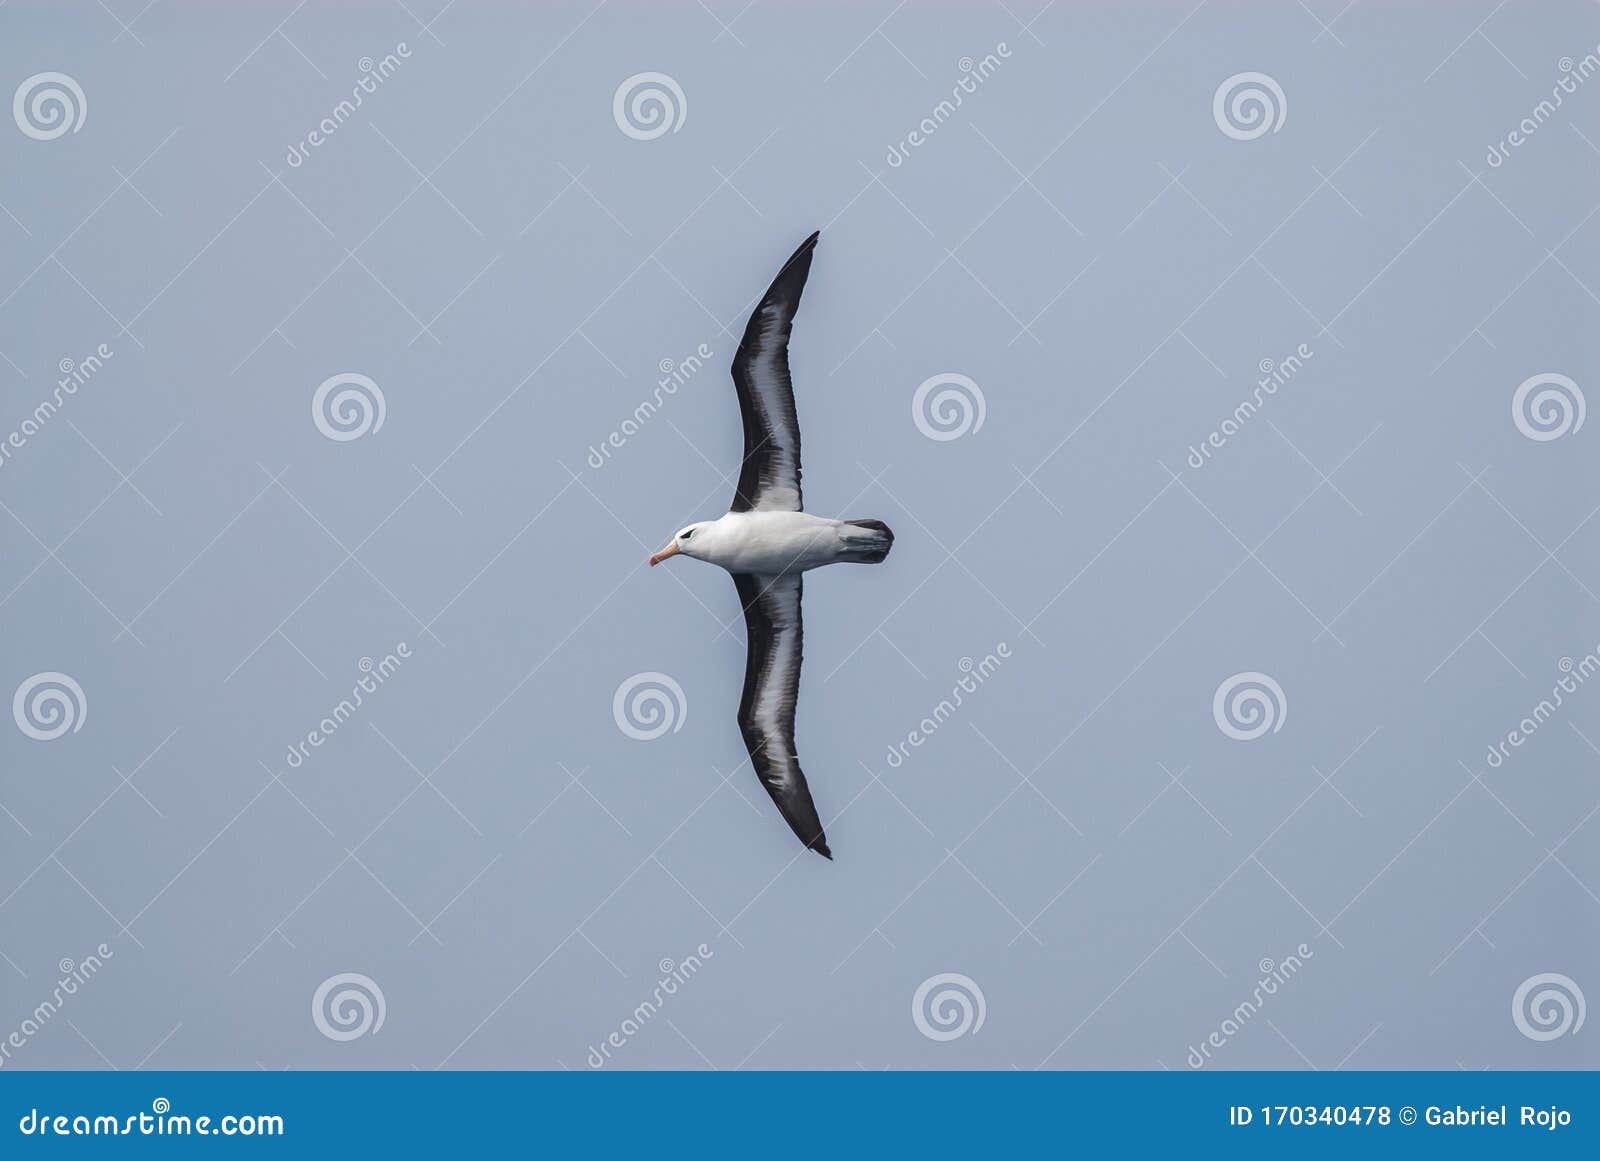 antartic bird, albatross, antÃÂ¡rtica